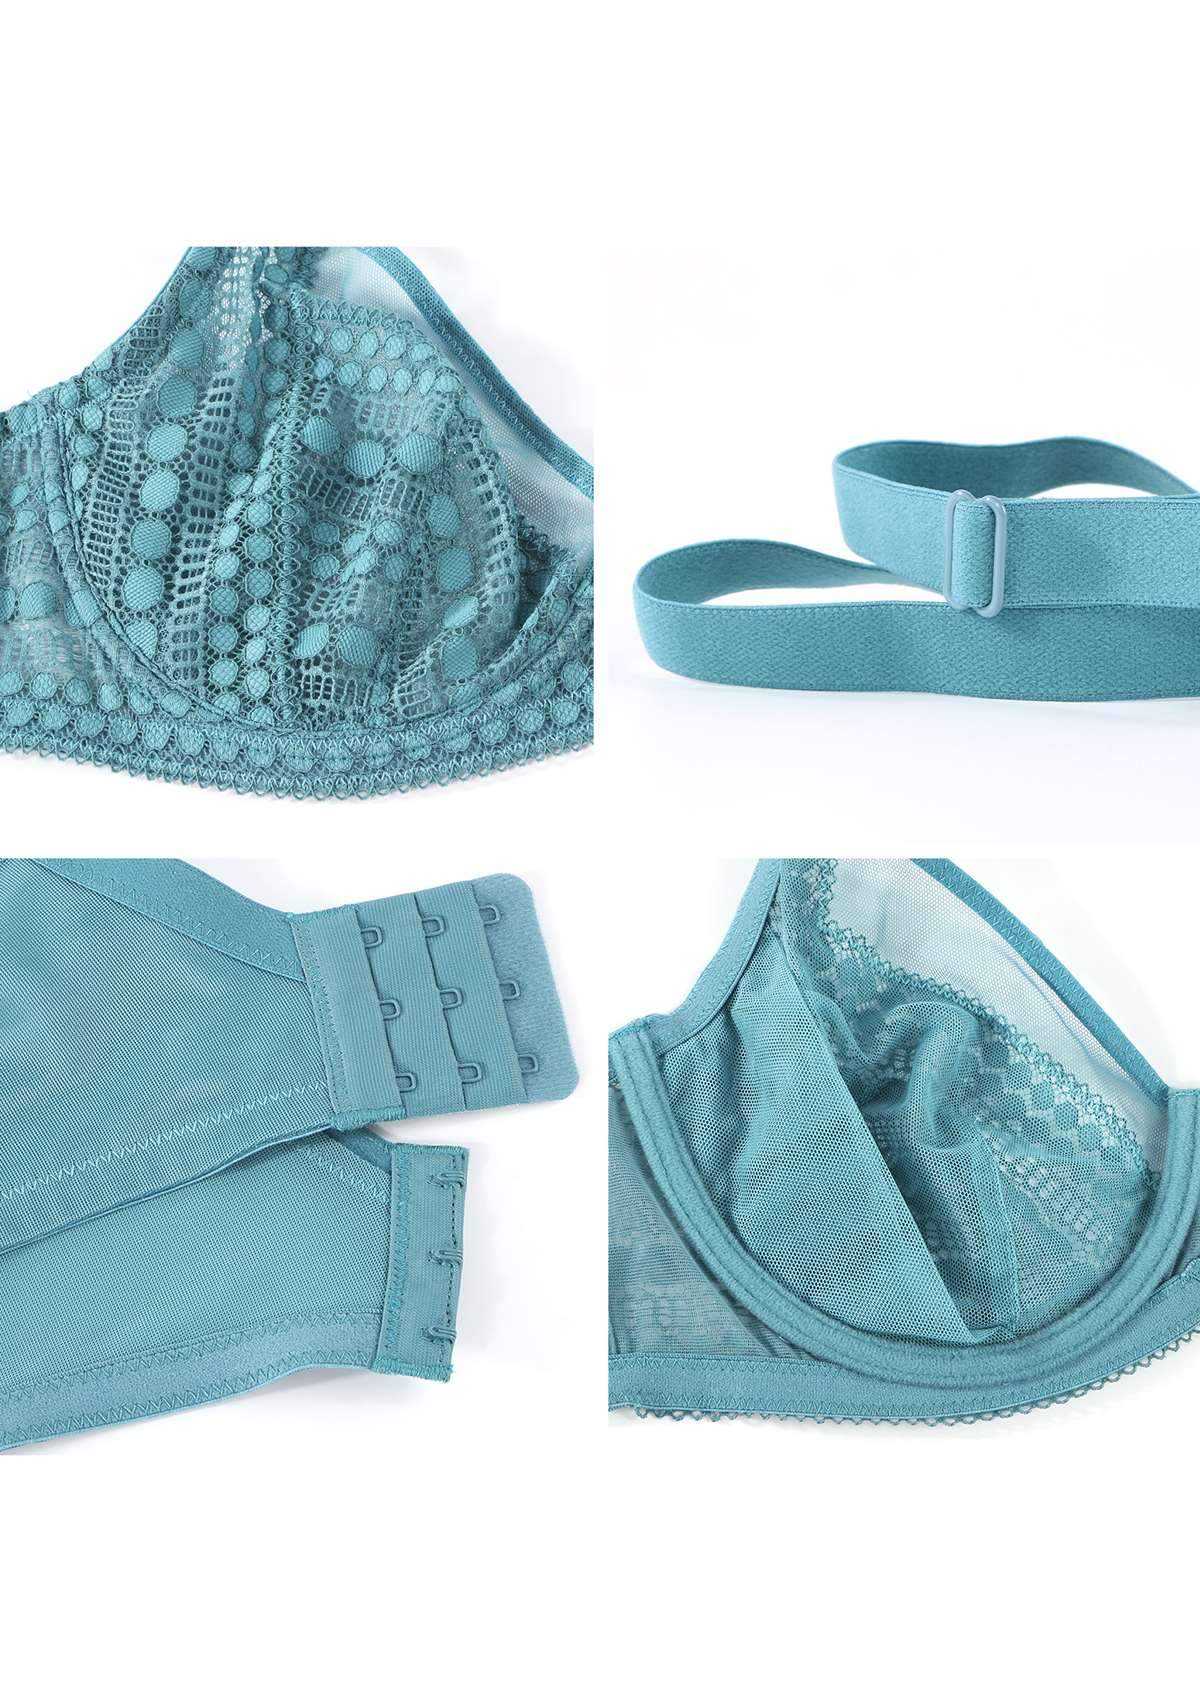 HSIA Heroine Matching Bra And Underwear Set: Bra For Big Boobs - Brittany Blue / 36 / C